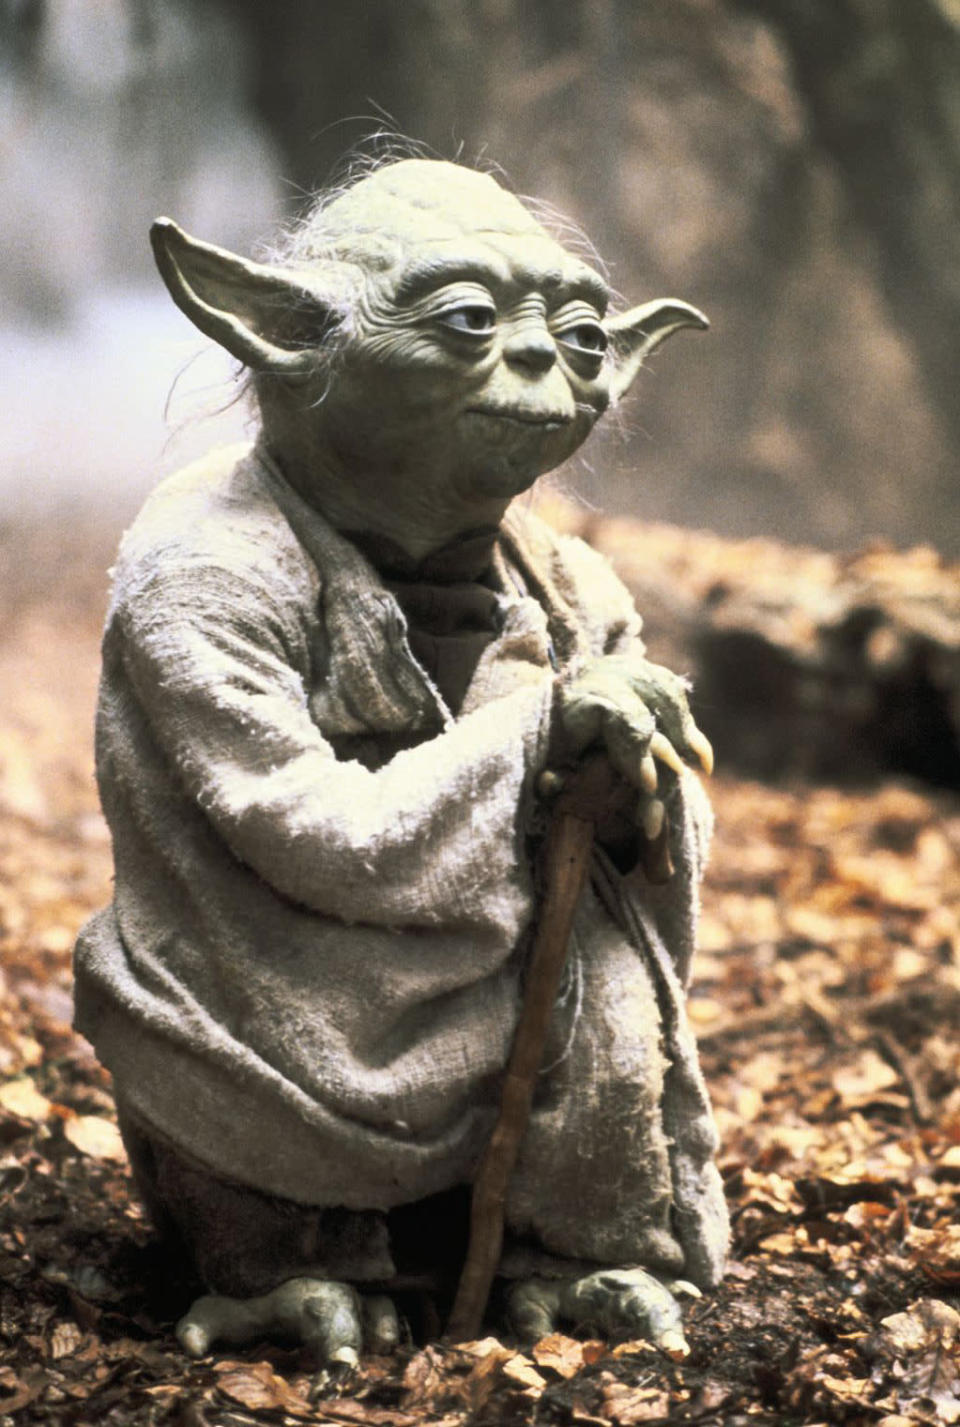 <b><span>Yoda</span></b><br>"<a href="http://movies.yahoo.com/movie/the-empire-strikes-back/" data-ylk="slk:The Empire Strikes Back;elm:context_link;itc:0;sec:content-canvas" class="link ">The Empire Strikes Back</a>" (1980)